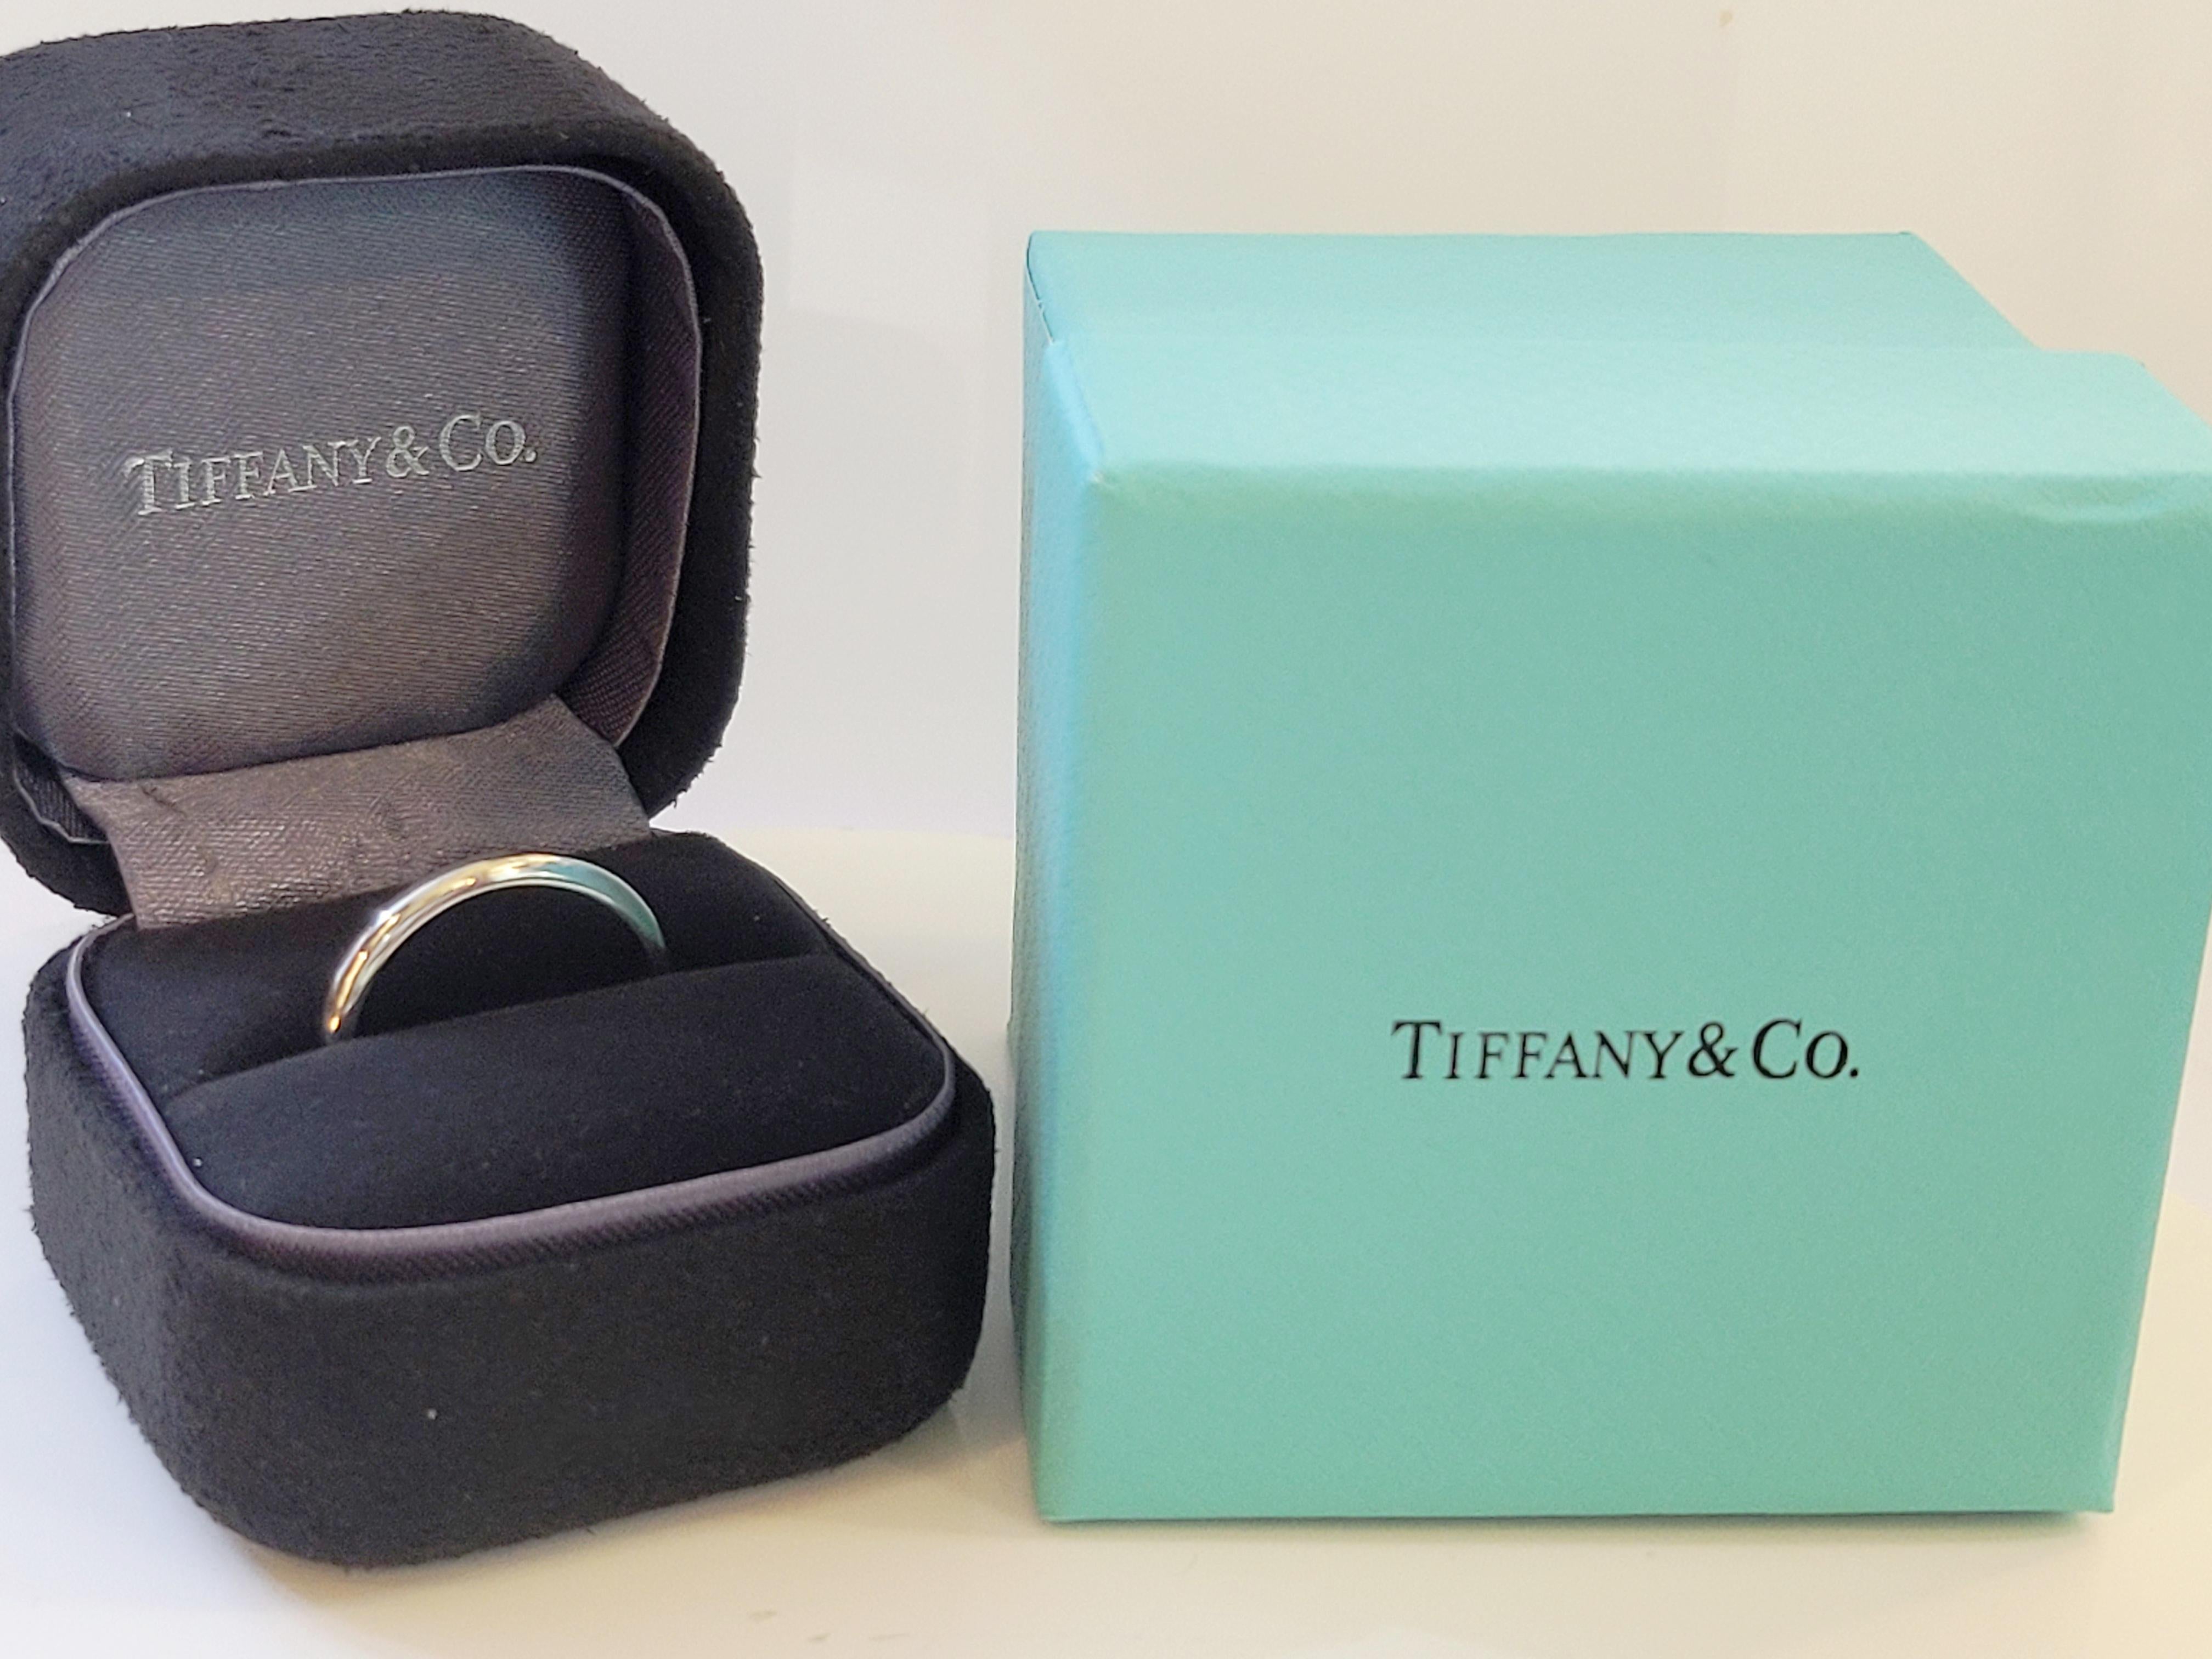 Peretti  Tiffany & Co.
Ehering 
Neuwertiger Zustand
Platin 950
Geschlecht Frauen
Ring Größe 6.5
Länge 20,2 
Breite 2,2 
Gewicht 4.0gr